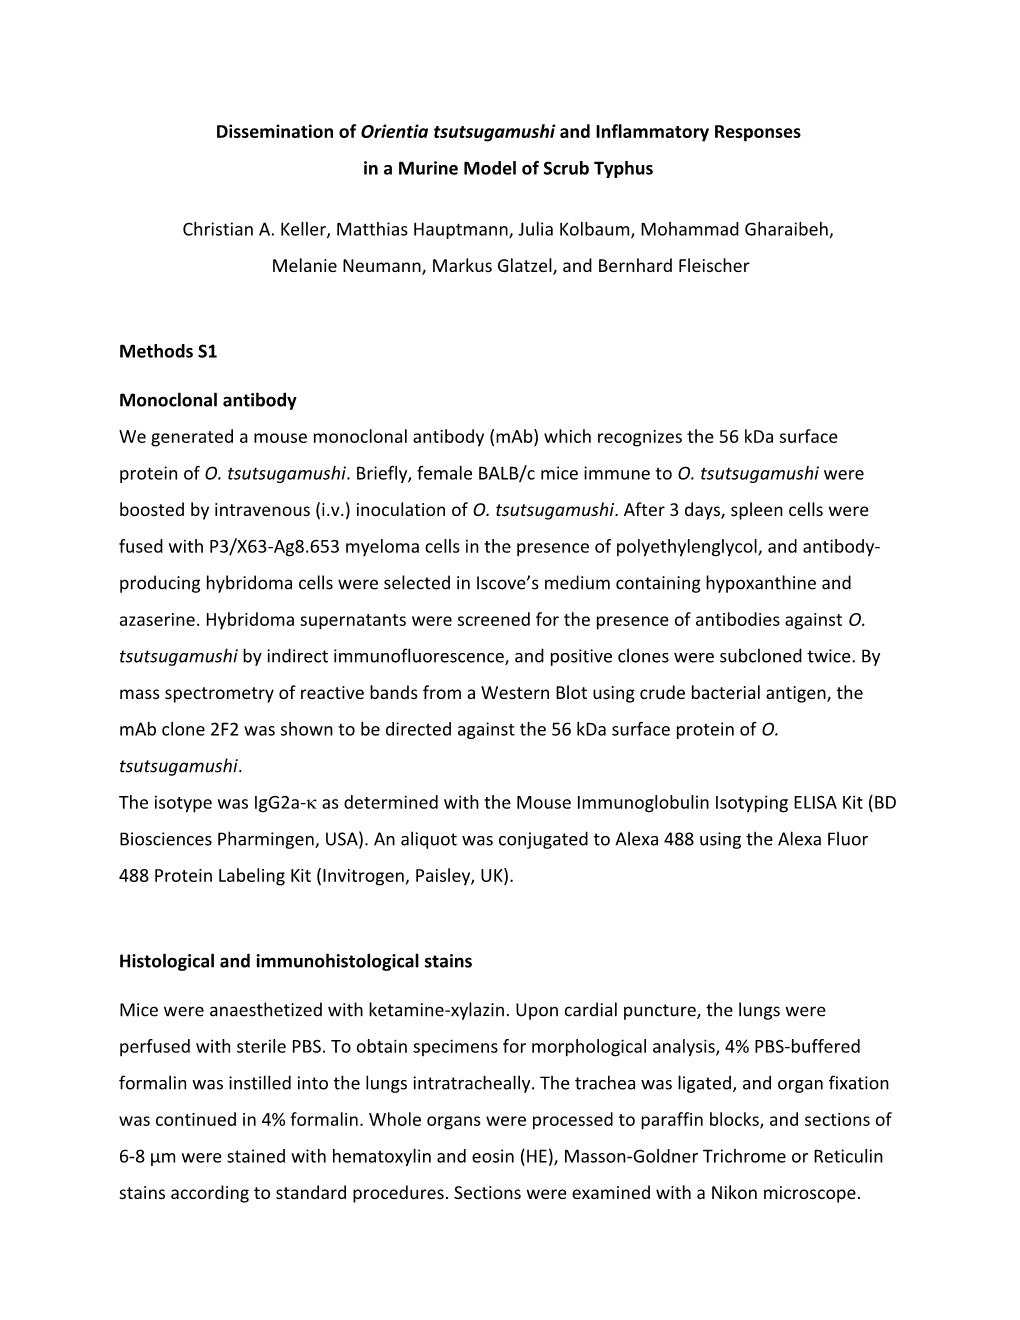 Dissemination of Orientia Tsutsugamushi and Inflammatory Responses